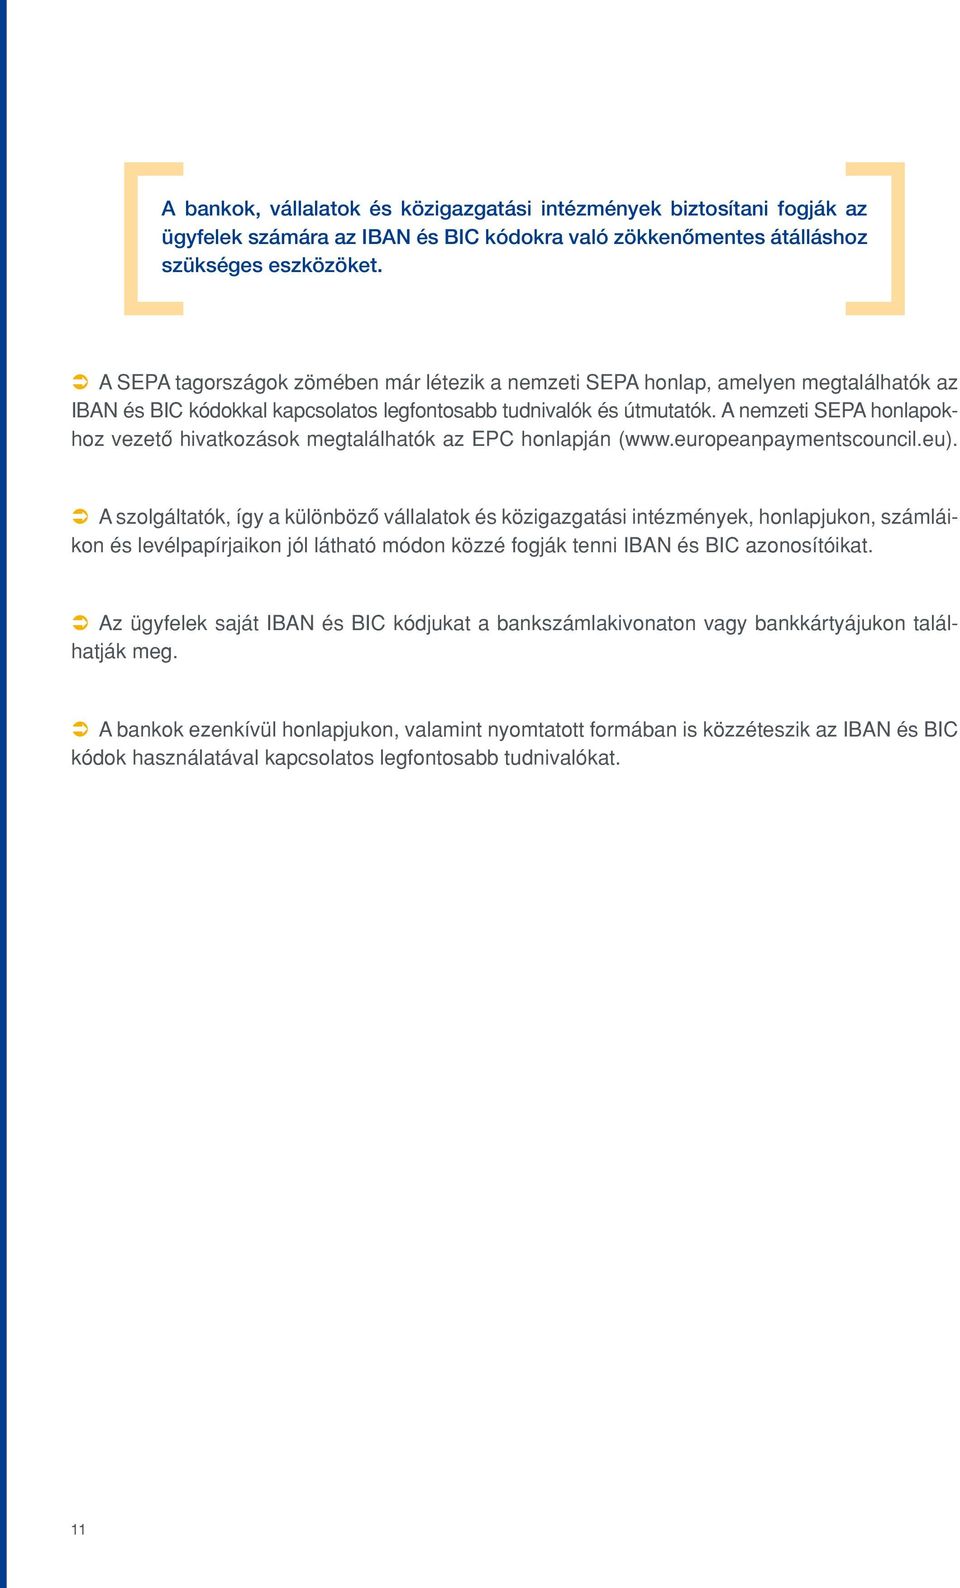 A nemzeti SEPA honlapokhoz vezetô hivatkozások megtalálhatók az EPC honlapján (www.europeanpaymentscouncil.eu).